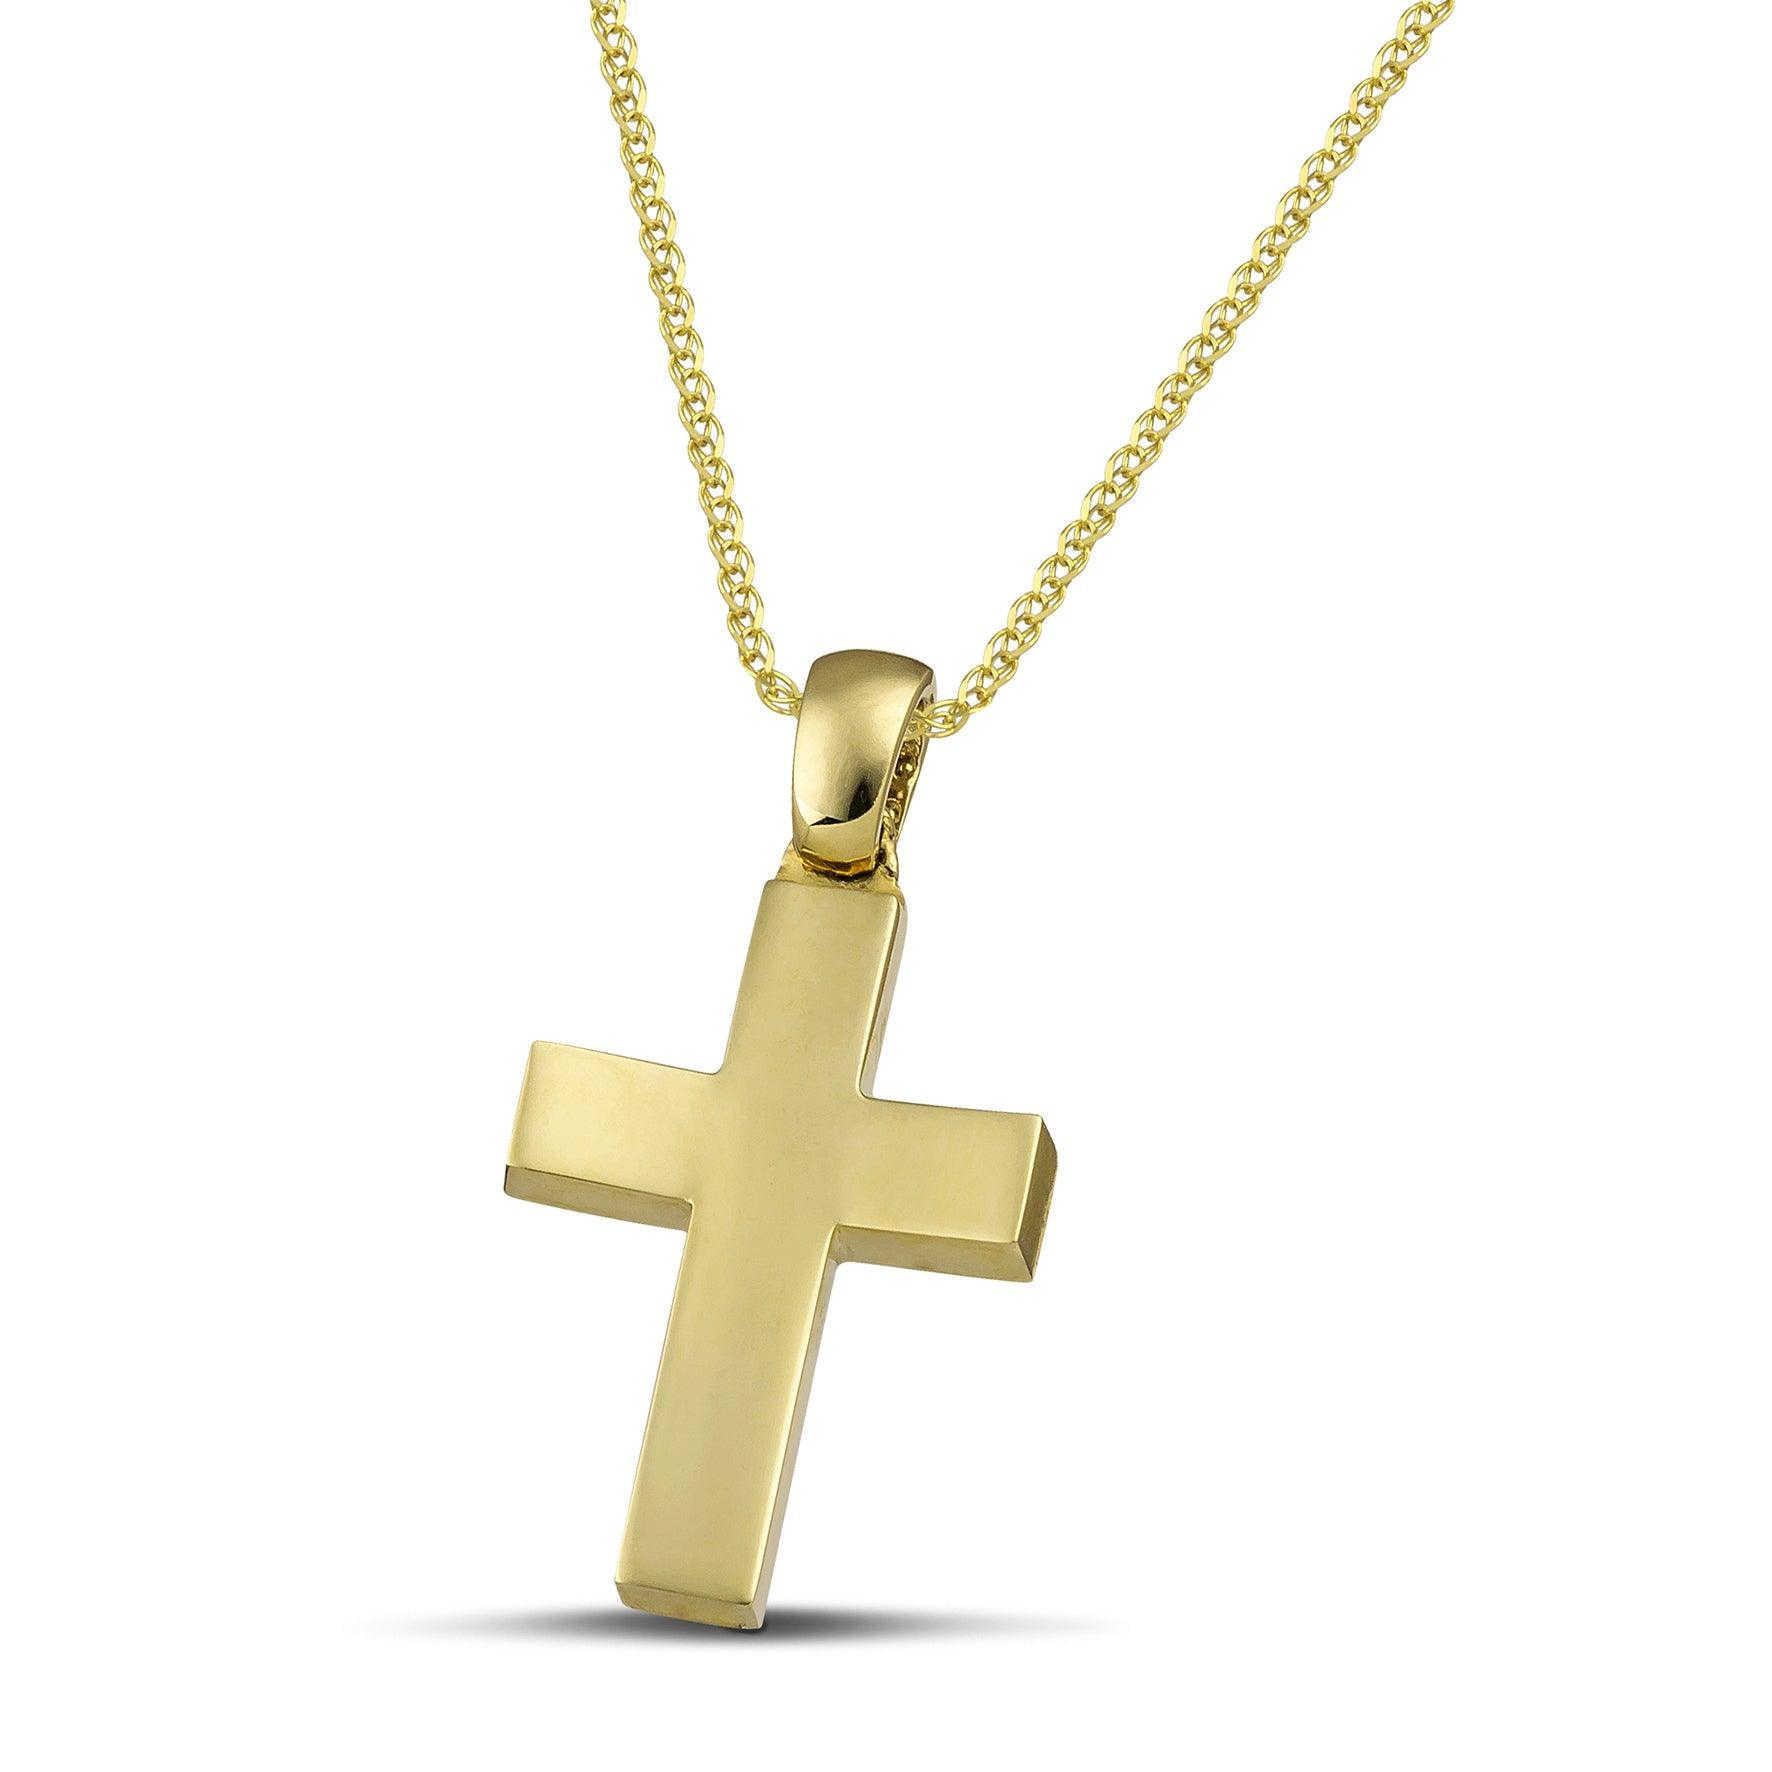 Βαπτιστικός χρυσός ματ σταυρός Κ14 για κορίτσι, με πλεκτή αλυσίδα.